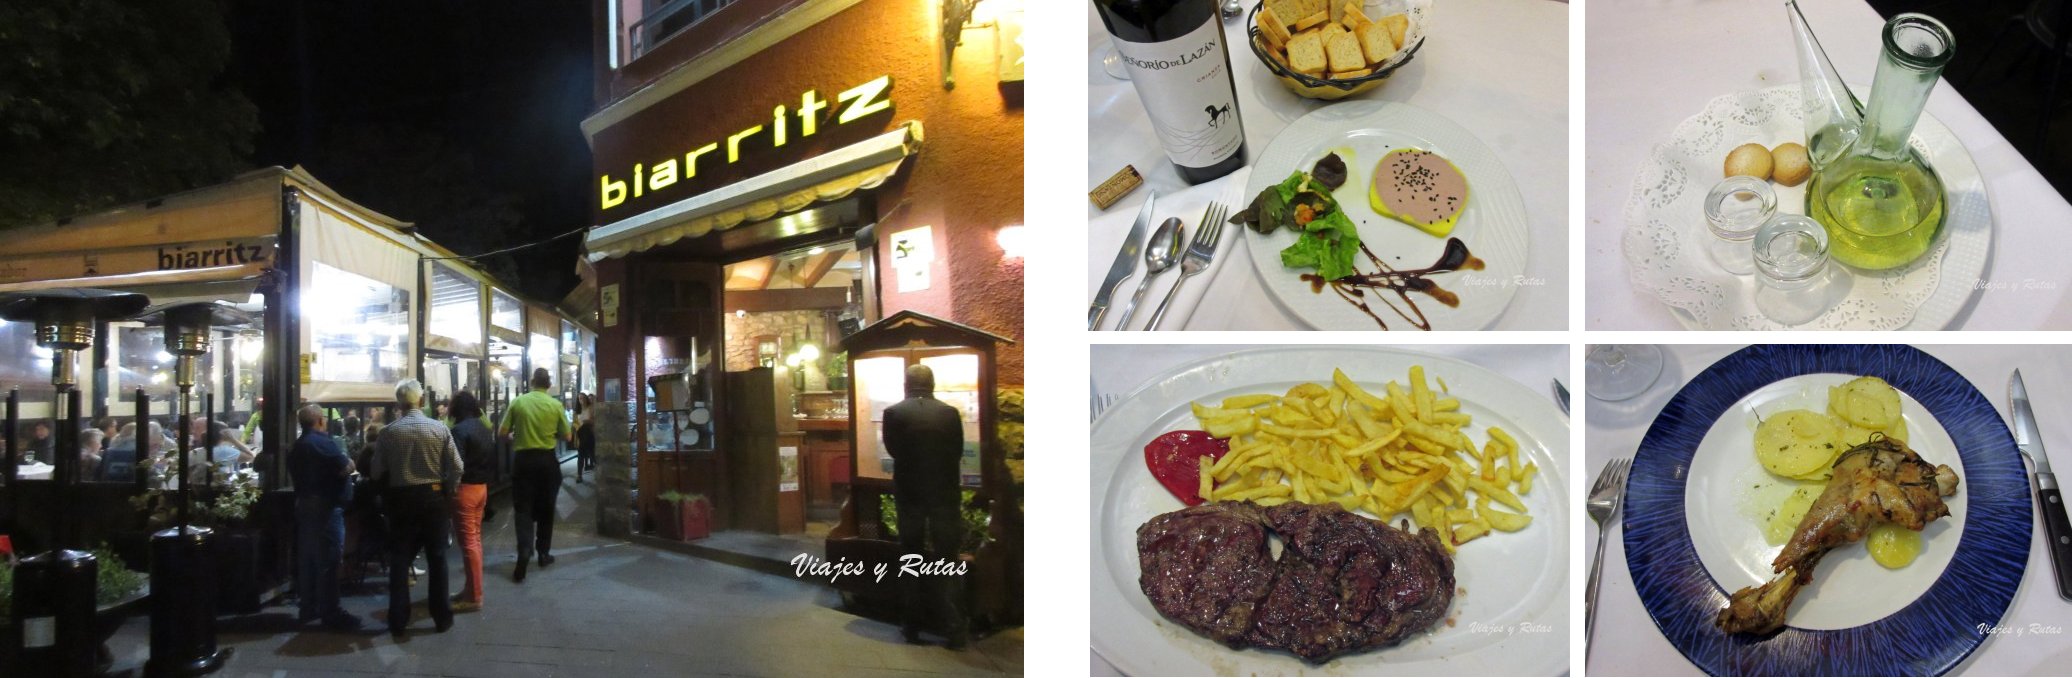 Restaurante Biarritz de Jaca